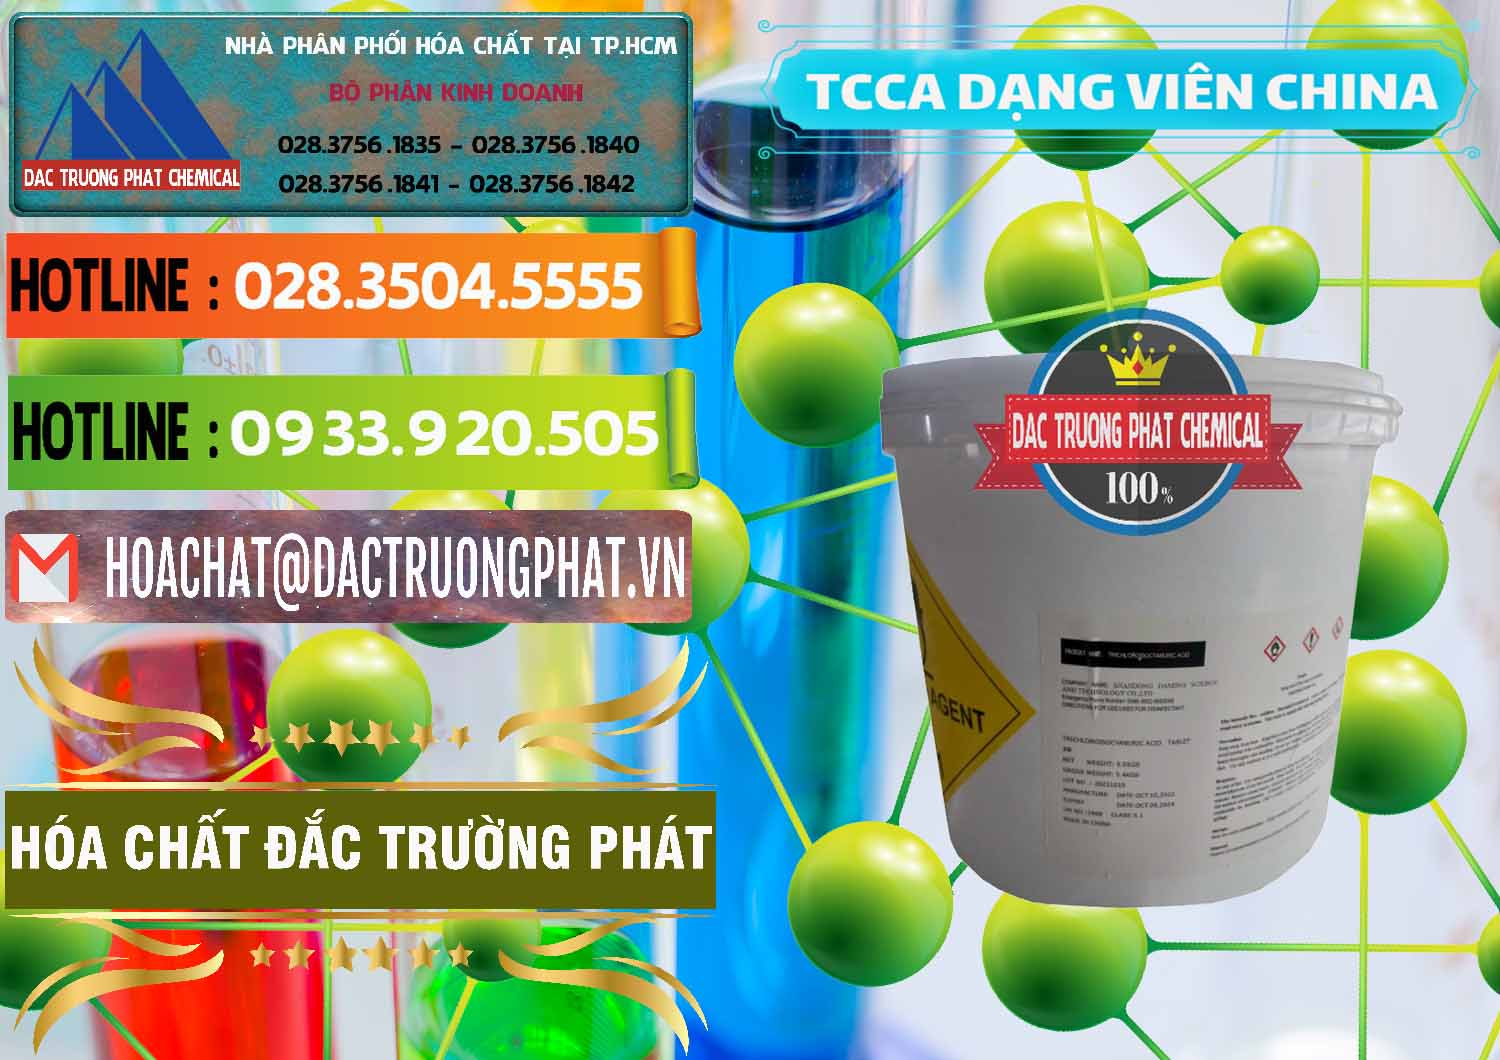 Nơi chuyên phân phối & bán TCCA - Acid Trichloroisocyanuric Dạng Viên Thùng 5kg Trung Quốc China - 0379 - Cung cấp ( phân phối ) hóa chất tại TP.HCM - cungcaphoachat.com.vn